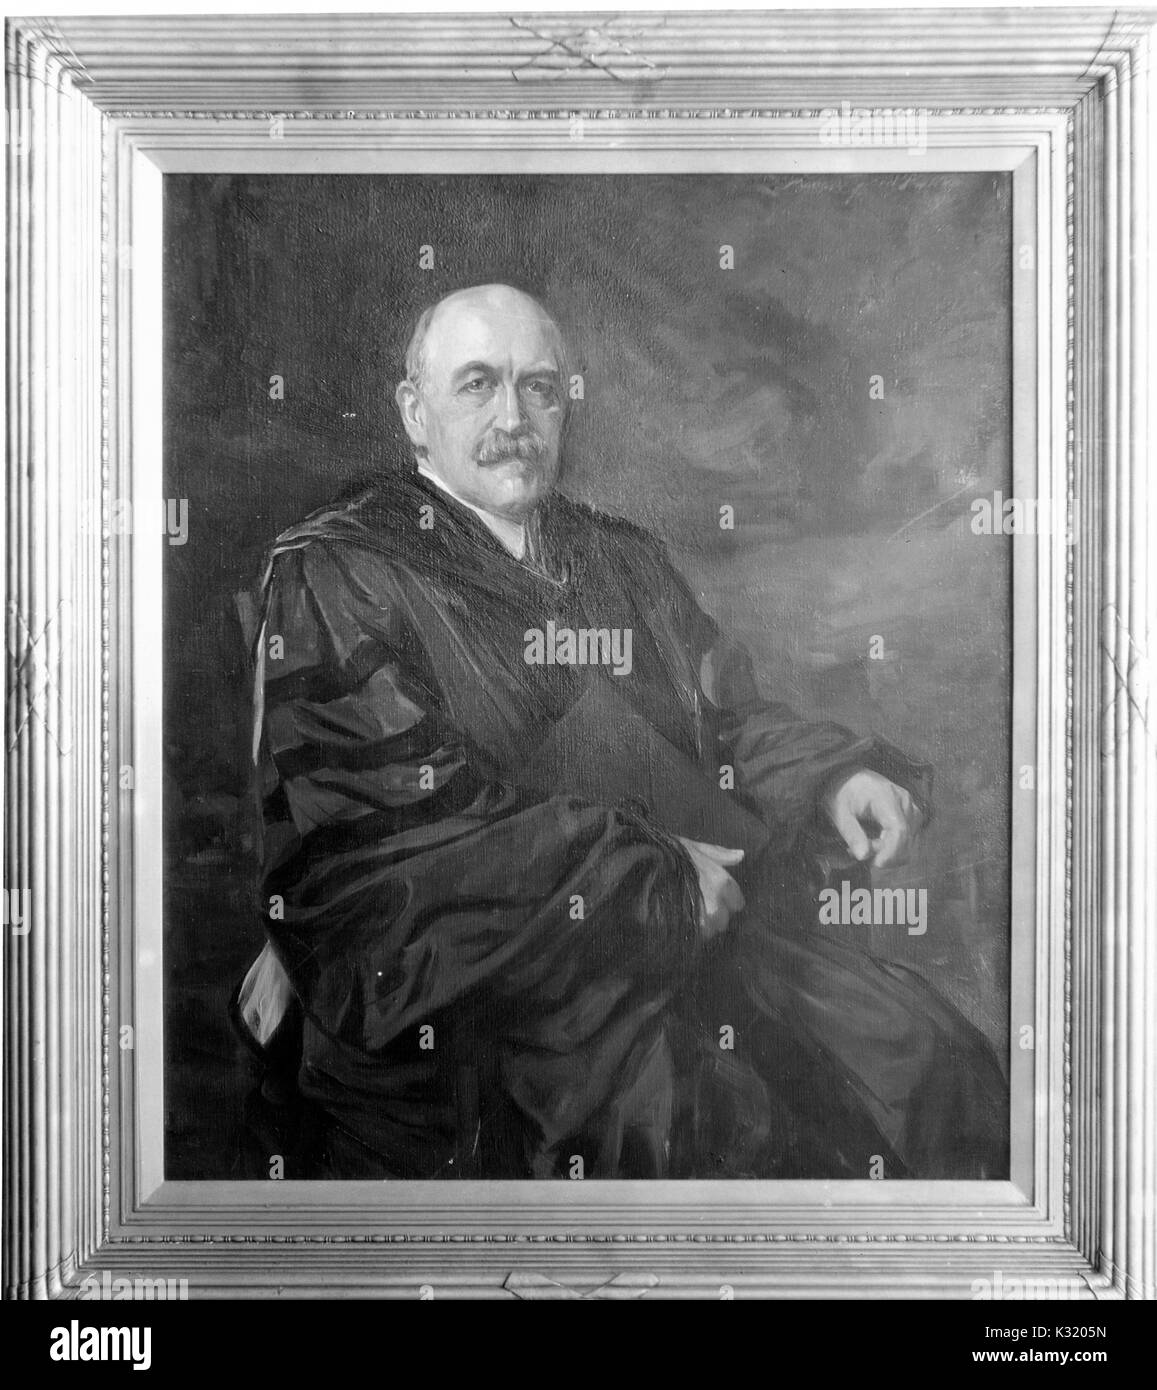 Ein Gemälde von William Bullock Clark, Professor für Geologie an der Johns Hopkins University, Sitzen und trägt einen dunklen Mantel, 1918. Stockfoto